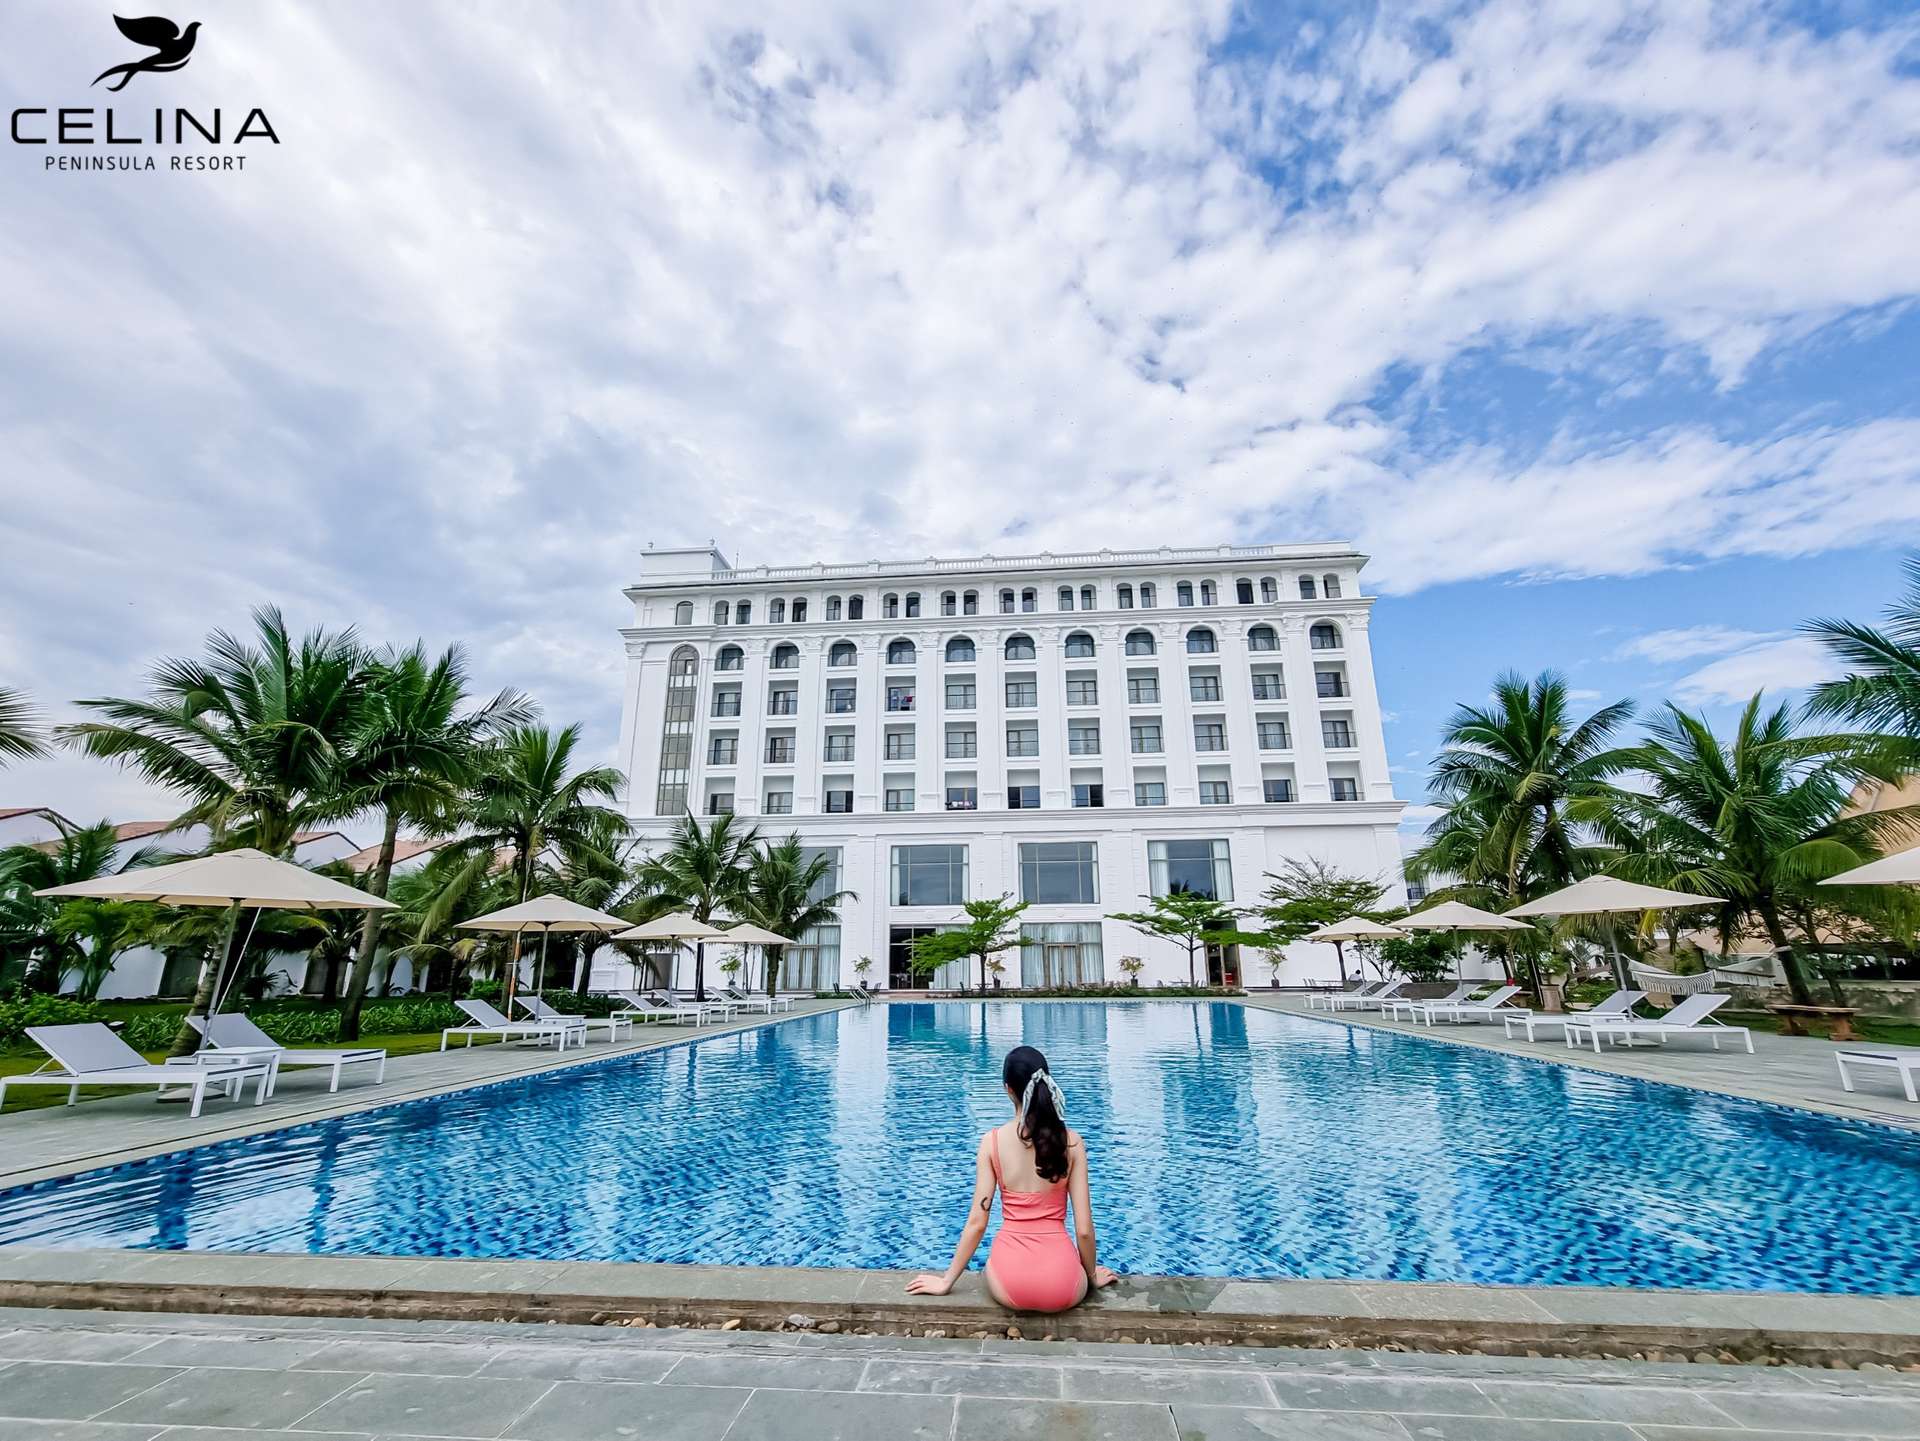 Celina Peninsula Resort - Khách sạn 4 sao Quảng Bình có hồ bơi